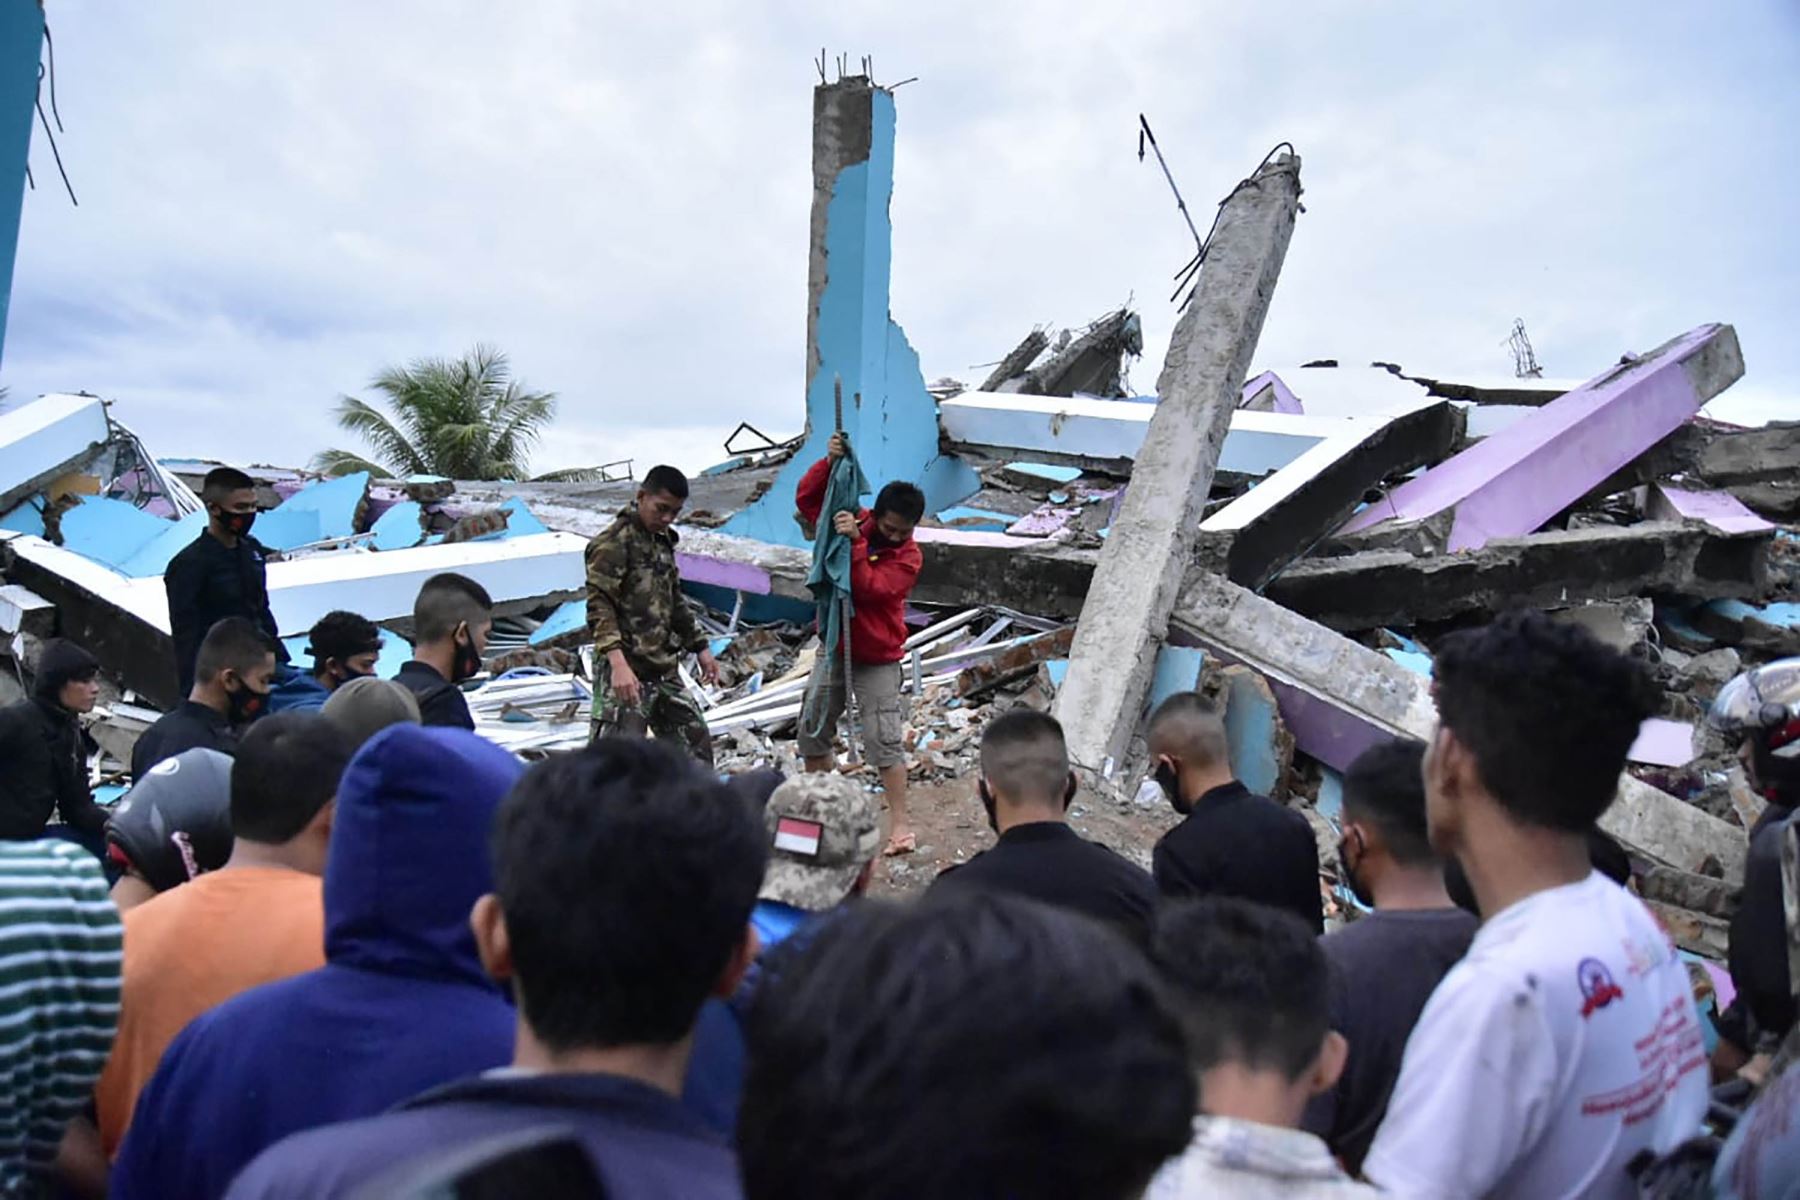 Equipos de rescate buscan sobrevivientes en el hospital Mitra Manakarra en la ciudad de Mamuju, donde hasta 20 pacientes y personal están atrapados bajo los escombros después de que el hospital se derrumbó cuando un terremoto de magnitud 6.2 sacudió la isla de Sulawesi en Indonesia. Foto: AFP